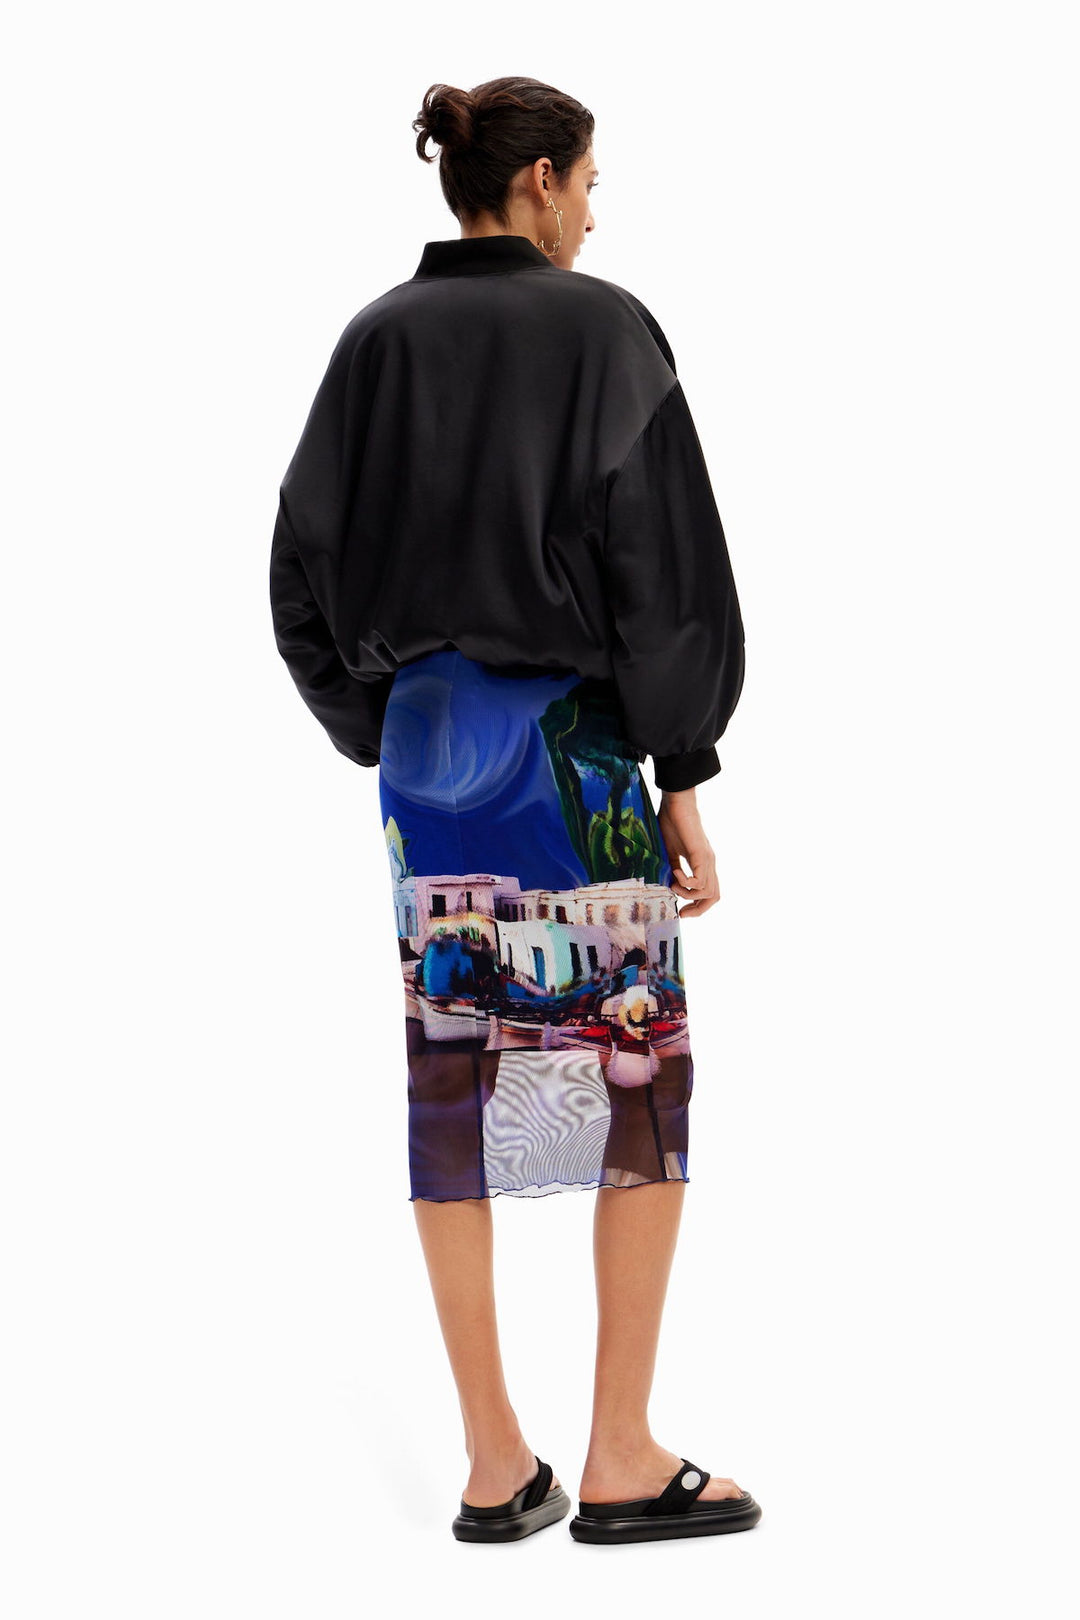 Landscape print skirt